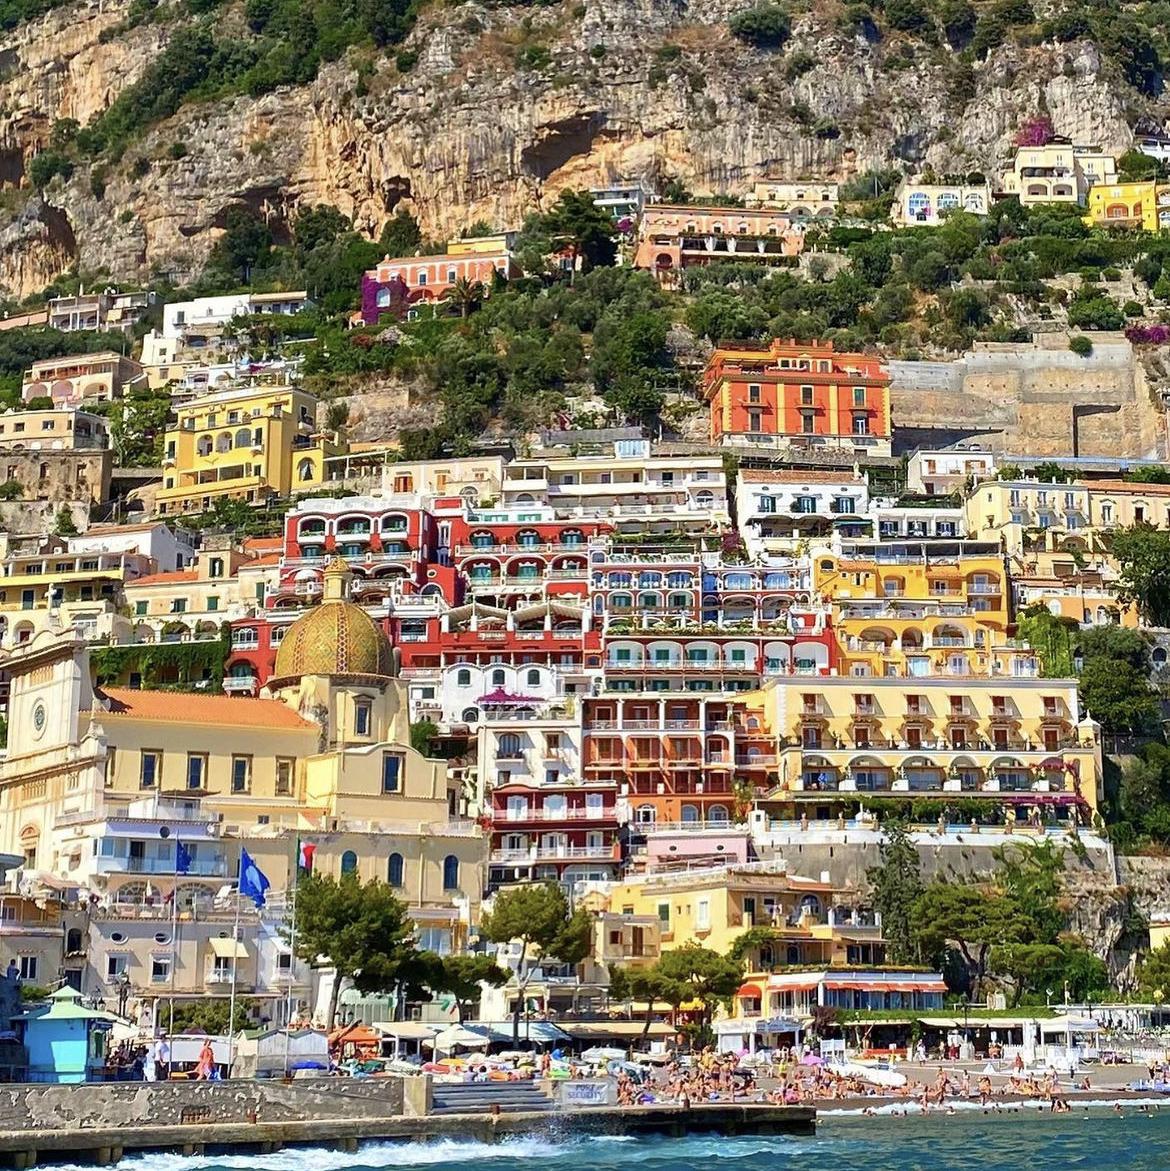 Amalfi Coast's images